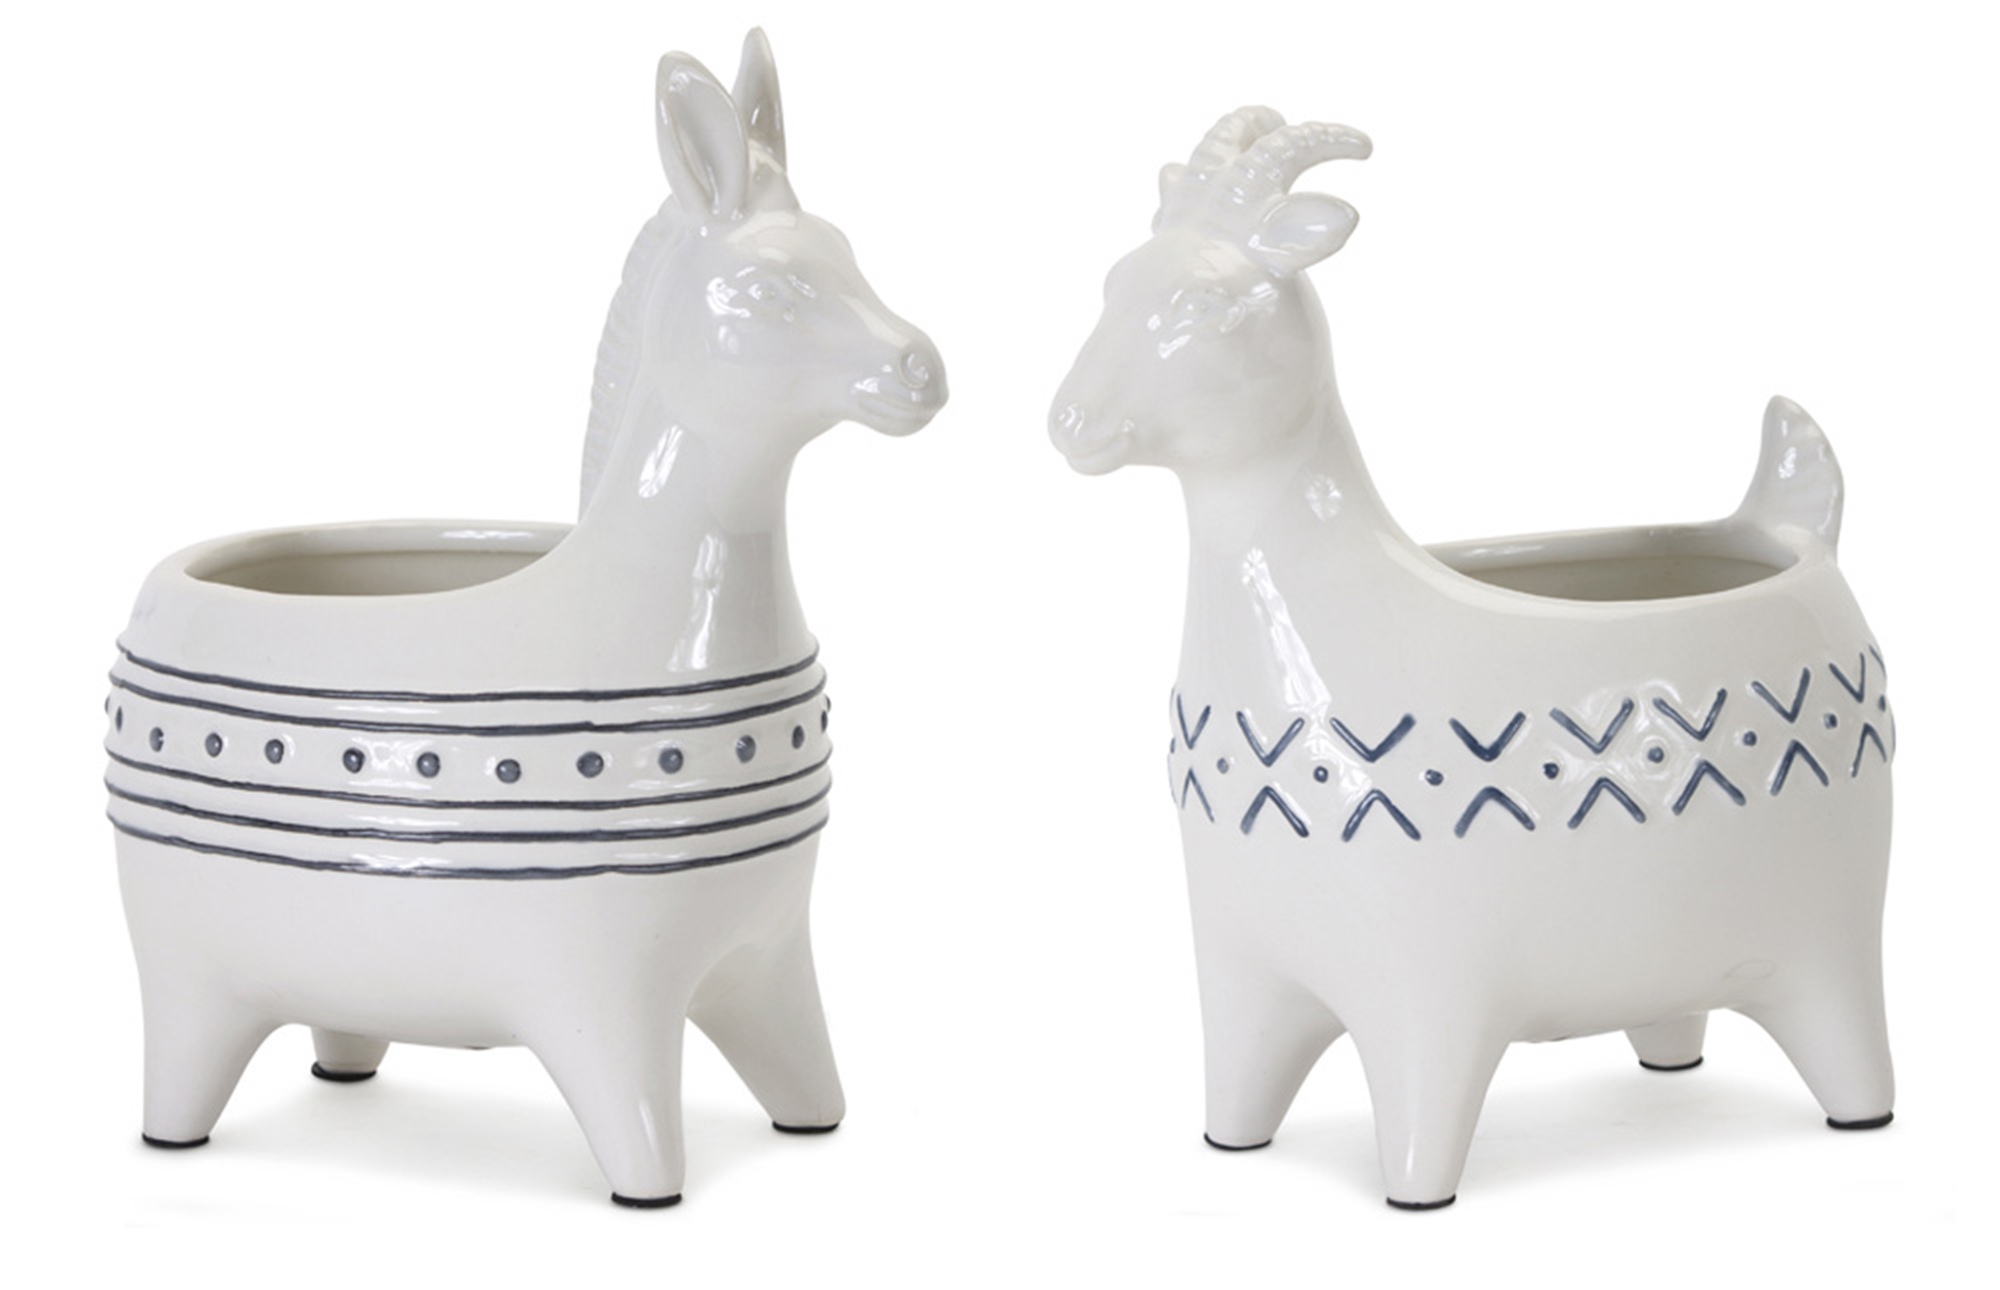 Goat/Donkey Planter (Set of 2) 4" x 7.75"H Ceramic